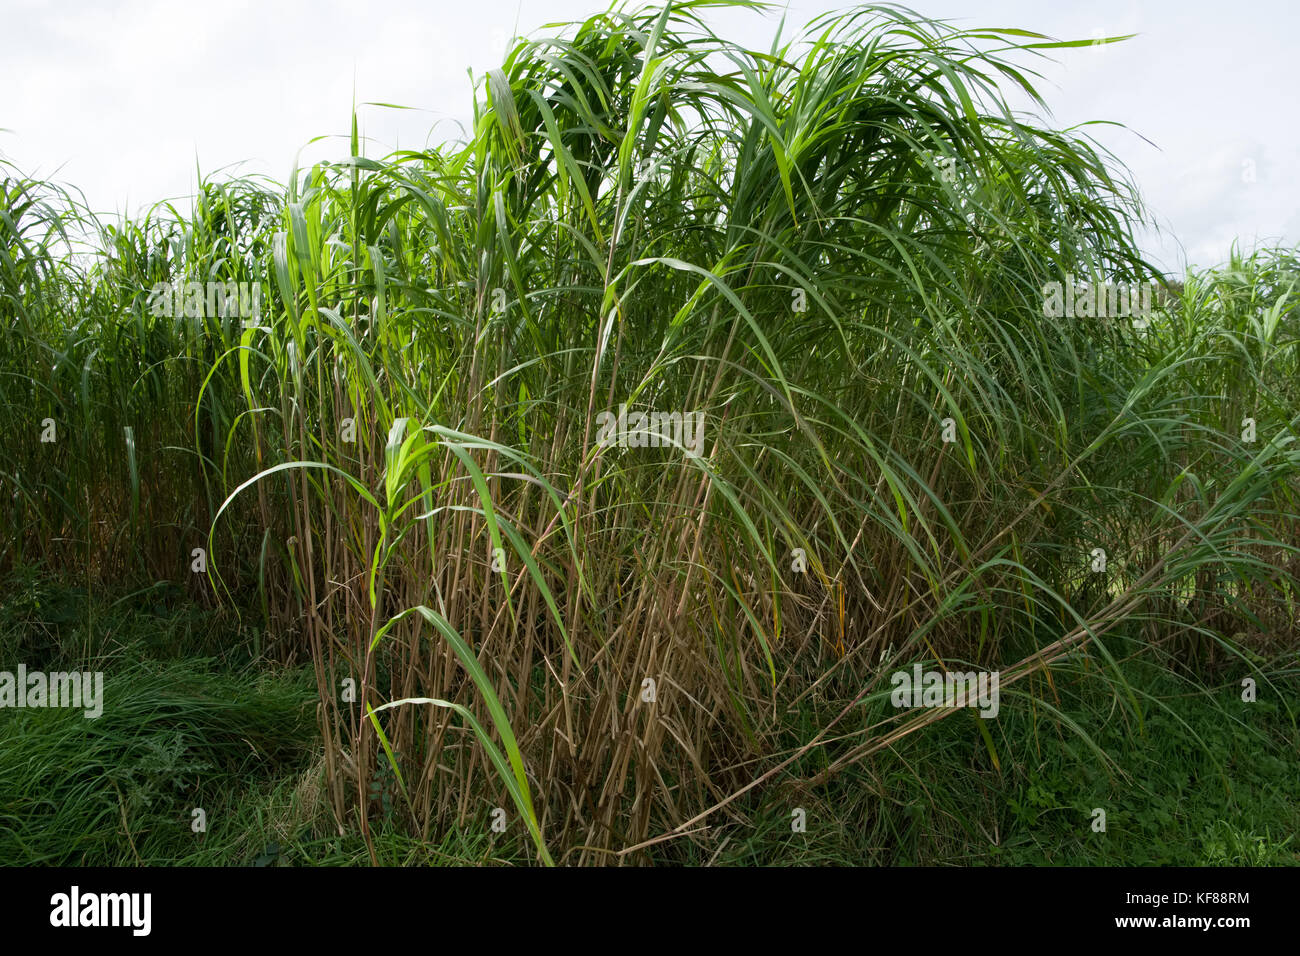 Miscanthus (im Allgemeinen als Elephant Grass bekannt) ist eine ertragreiche Energieernte, die über 3 Meter groß wird, Bambus ähnelt und jede Ernte produziert Stockfoto